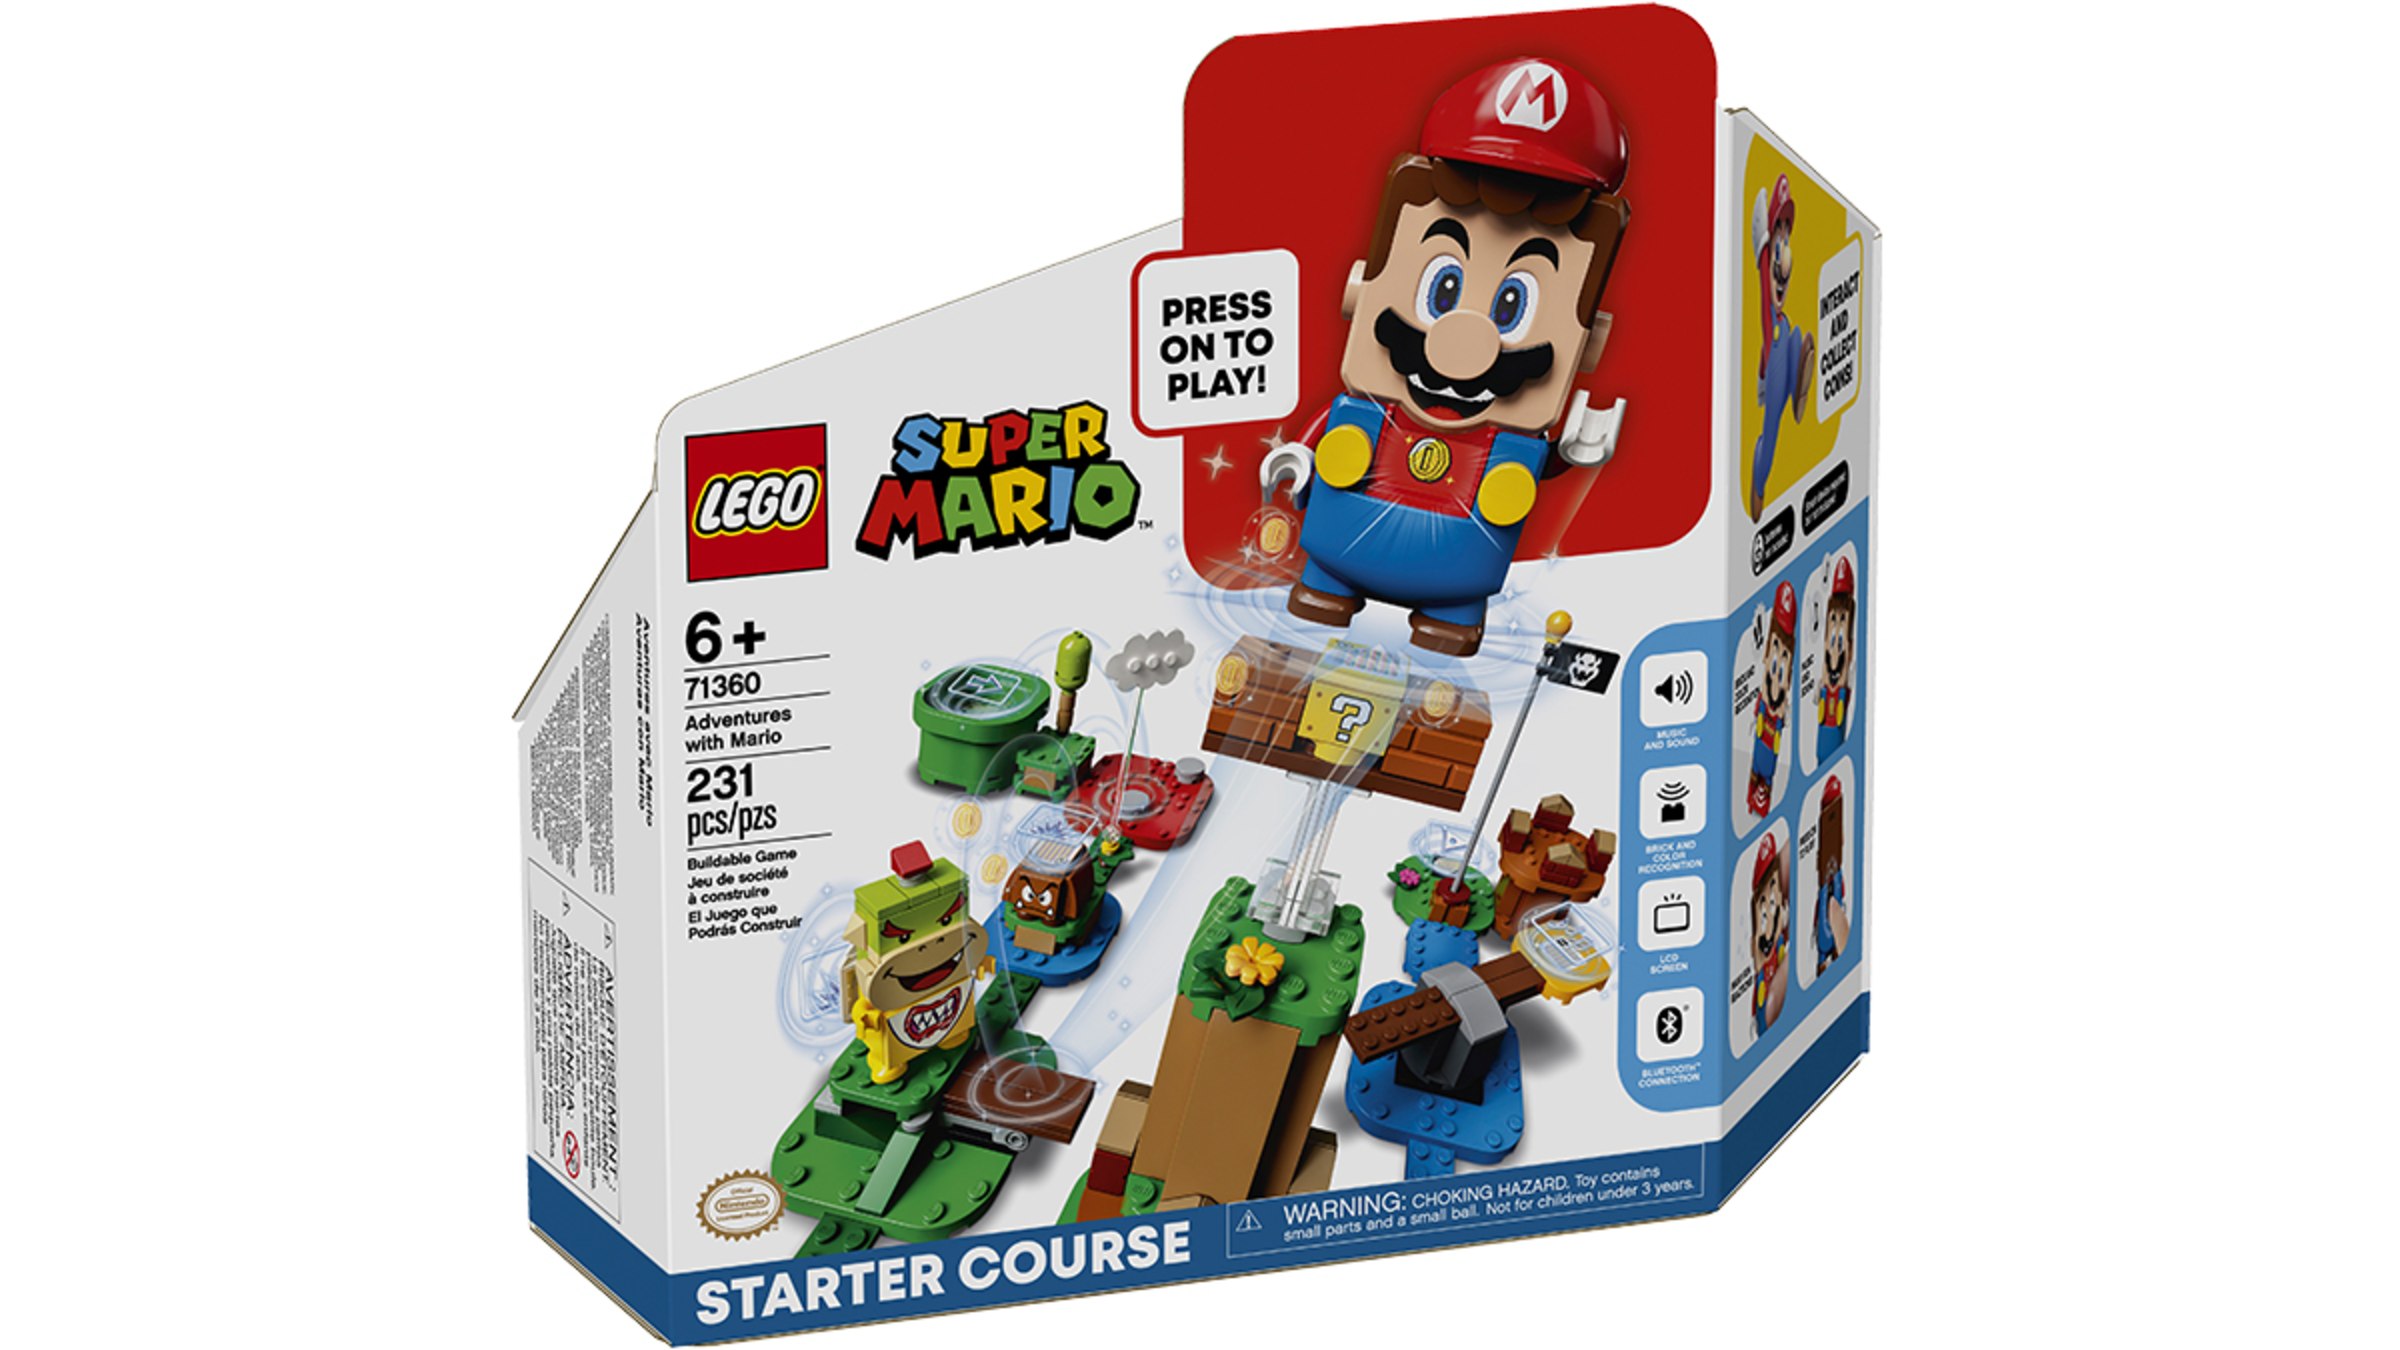 LEGO® Super Mario™ Adventures with Mario Starter Course - Merchandise -  Nintendo Official Site